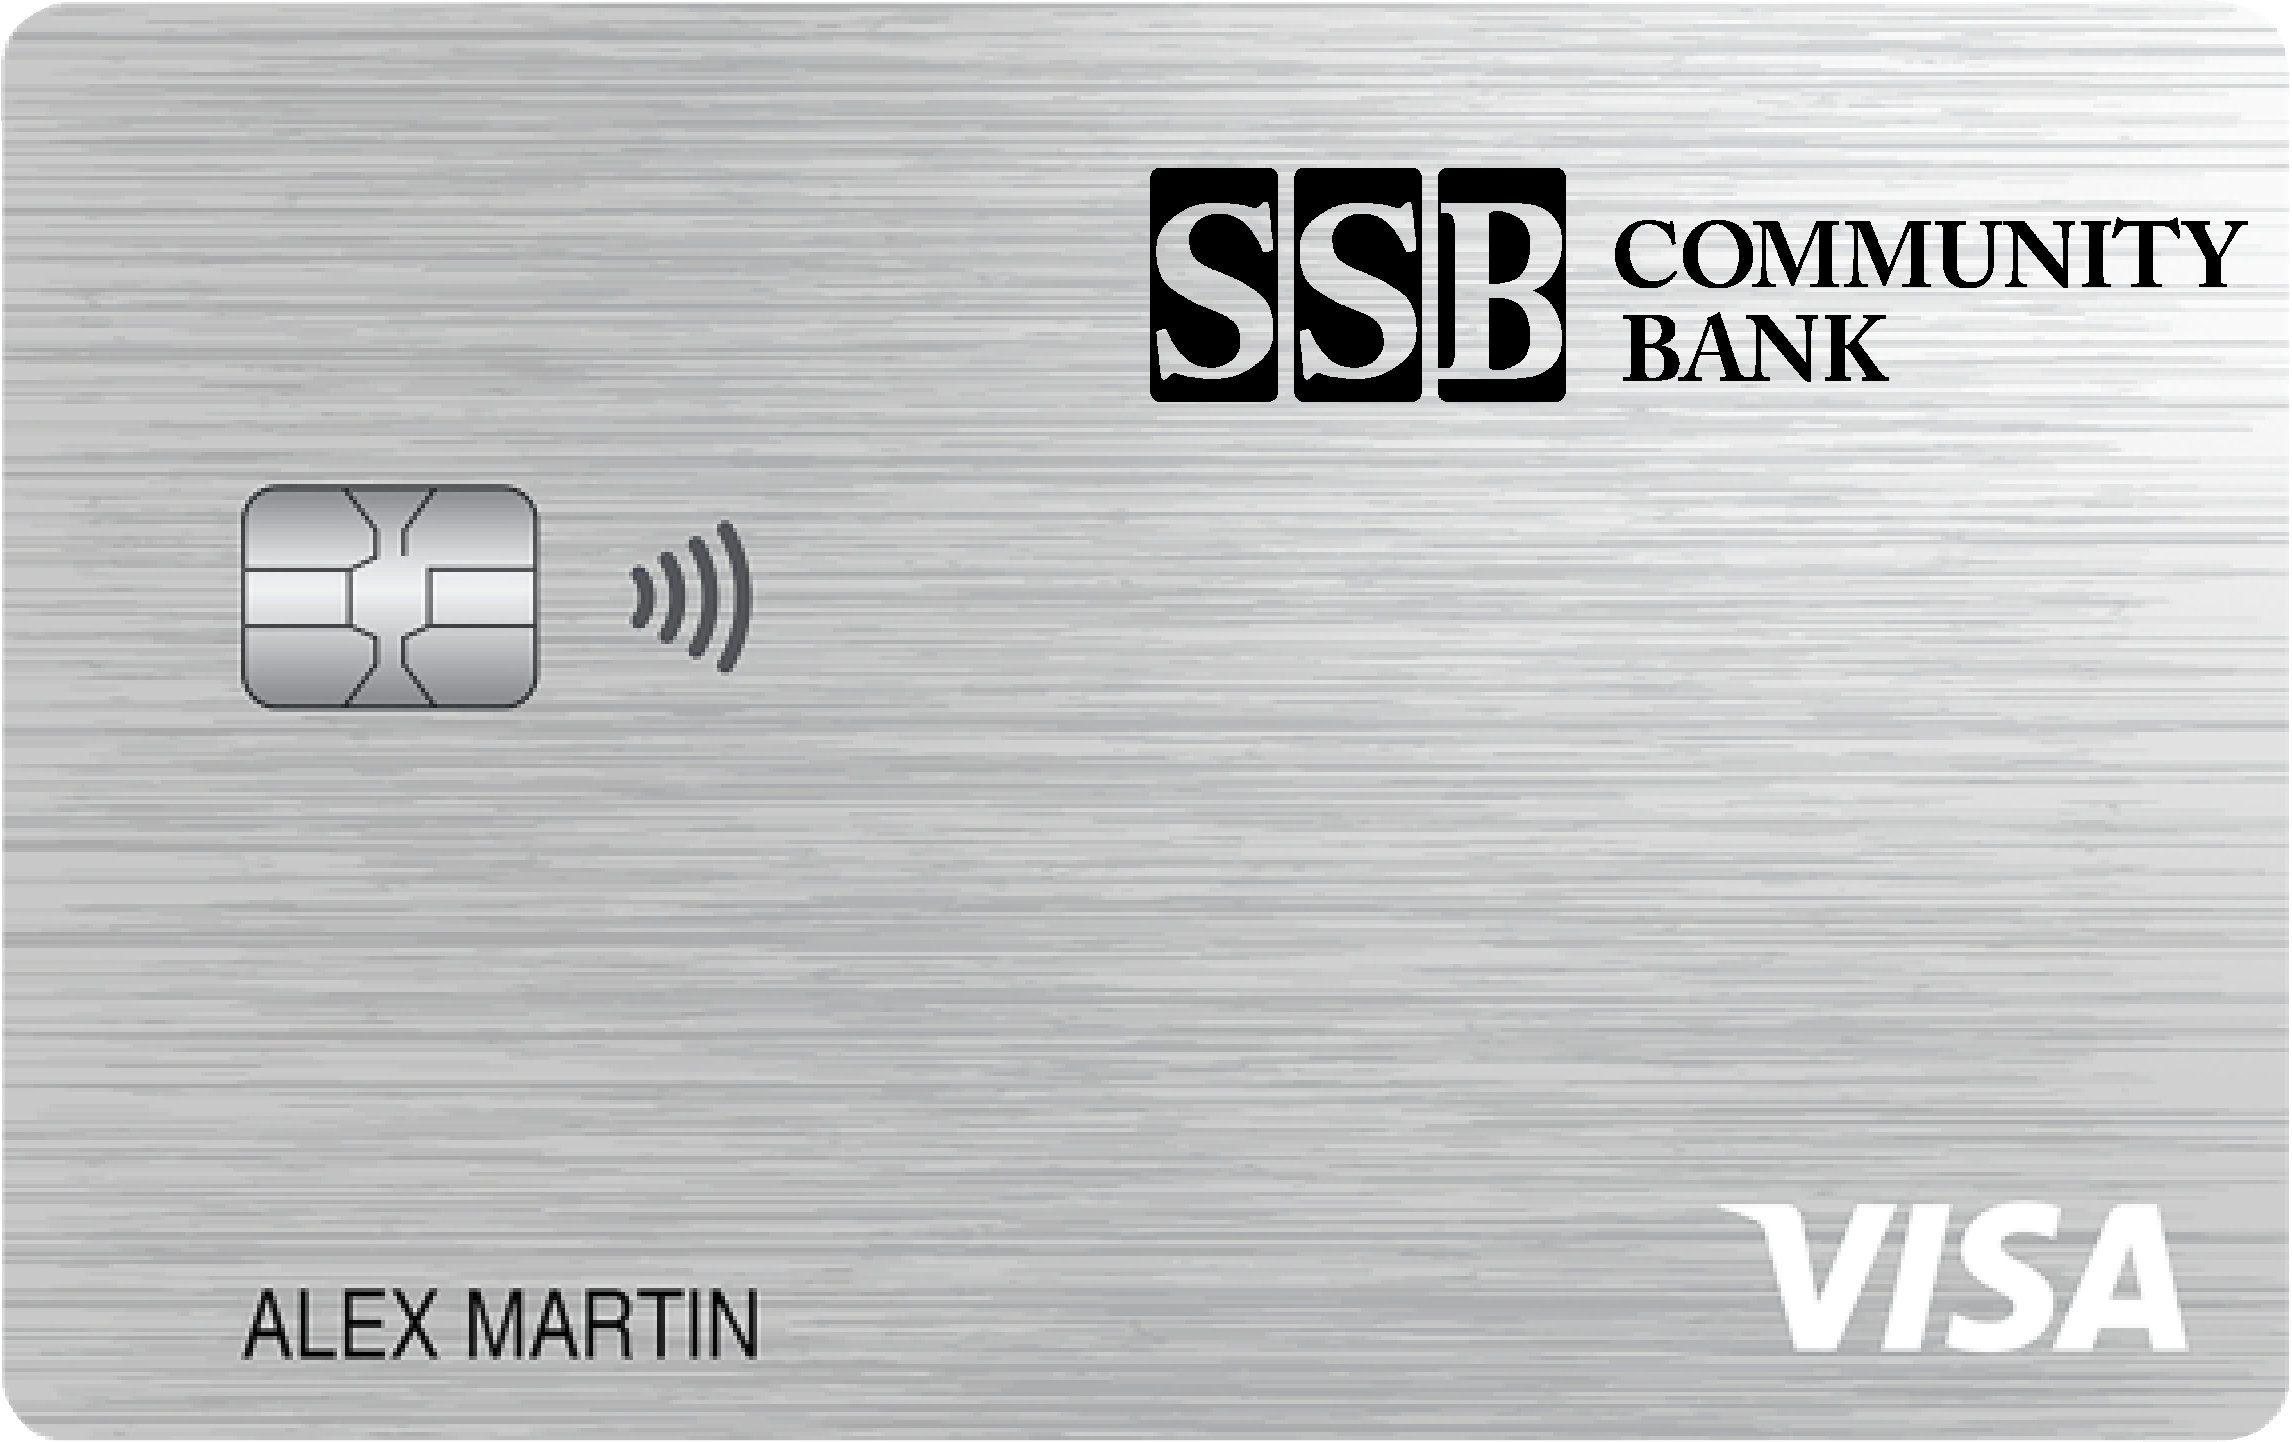 SSB Community Bank Secured Card